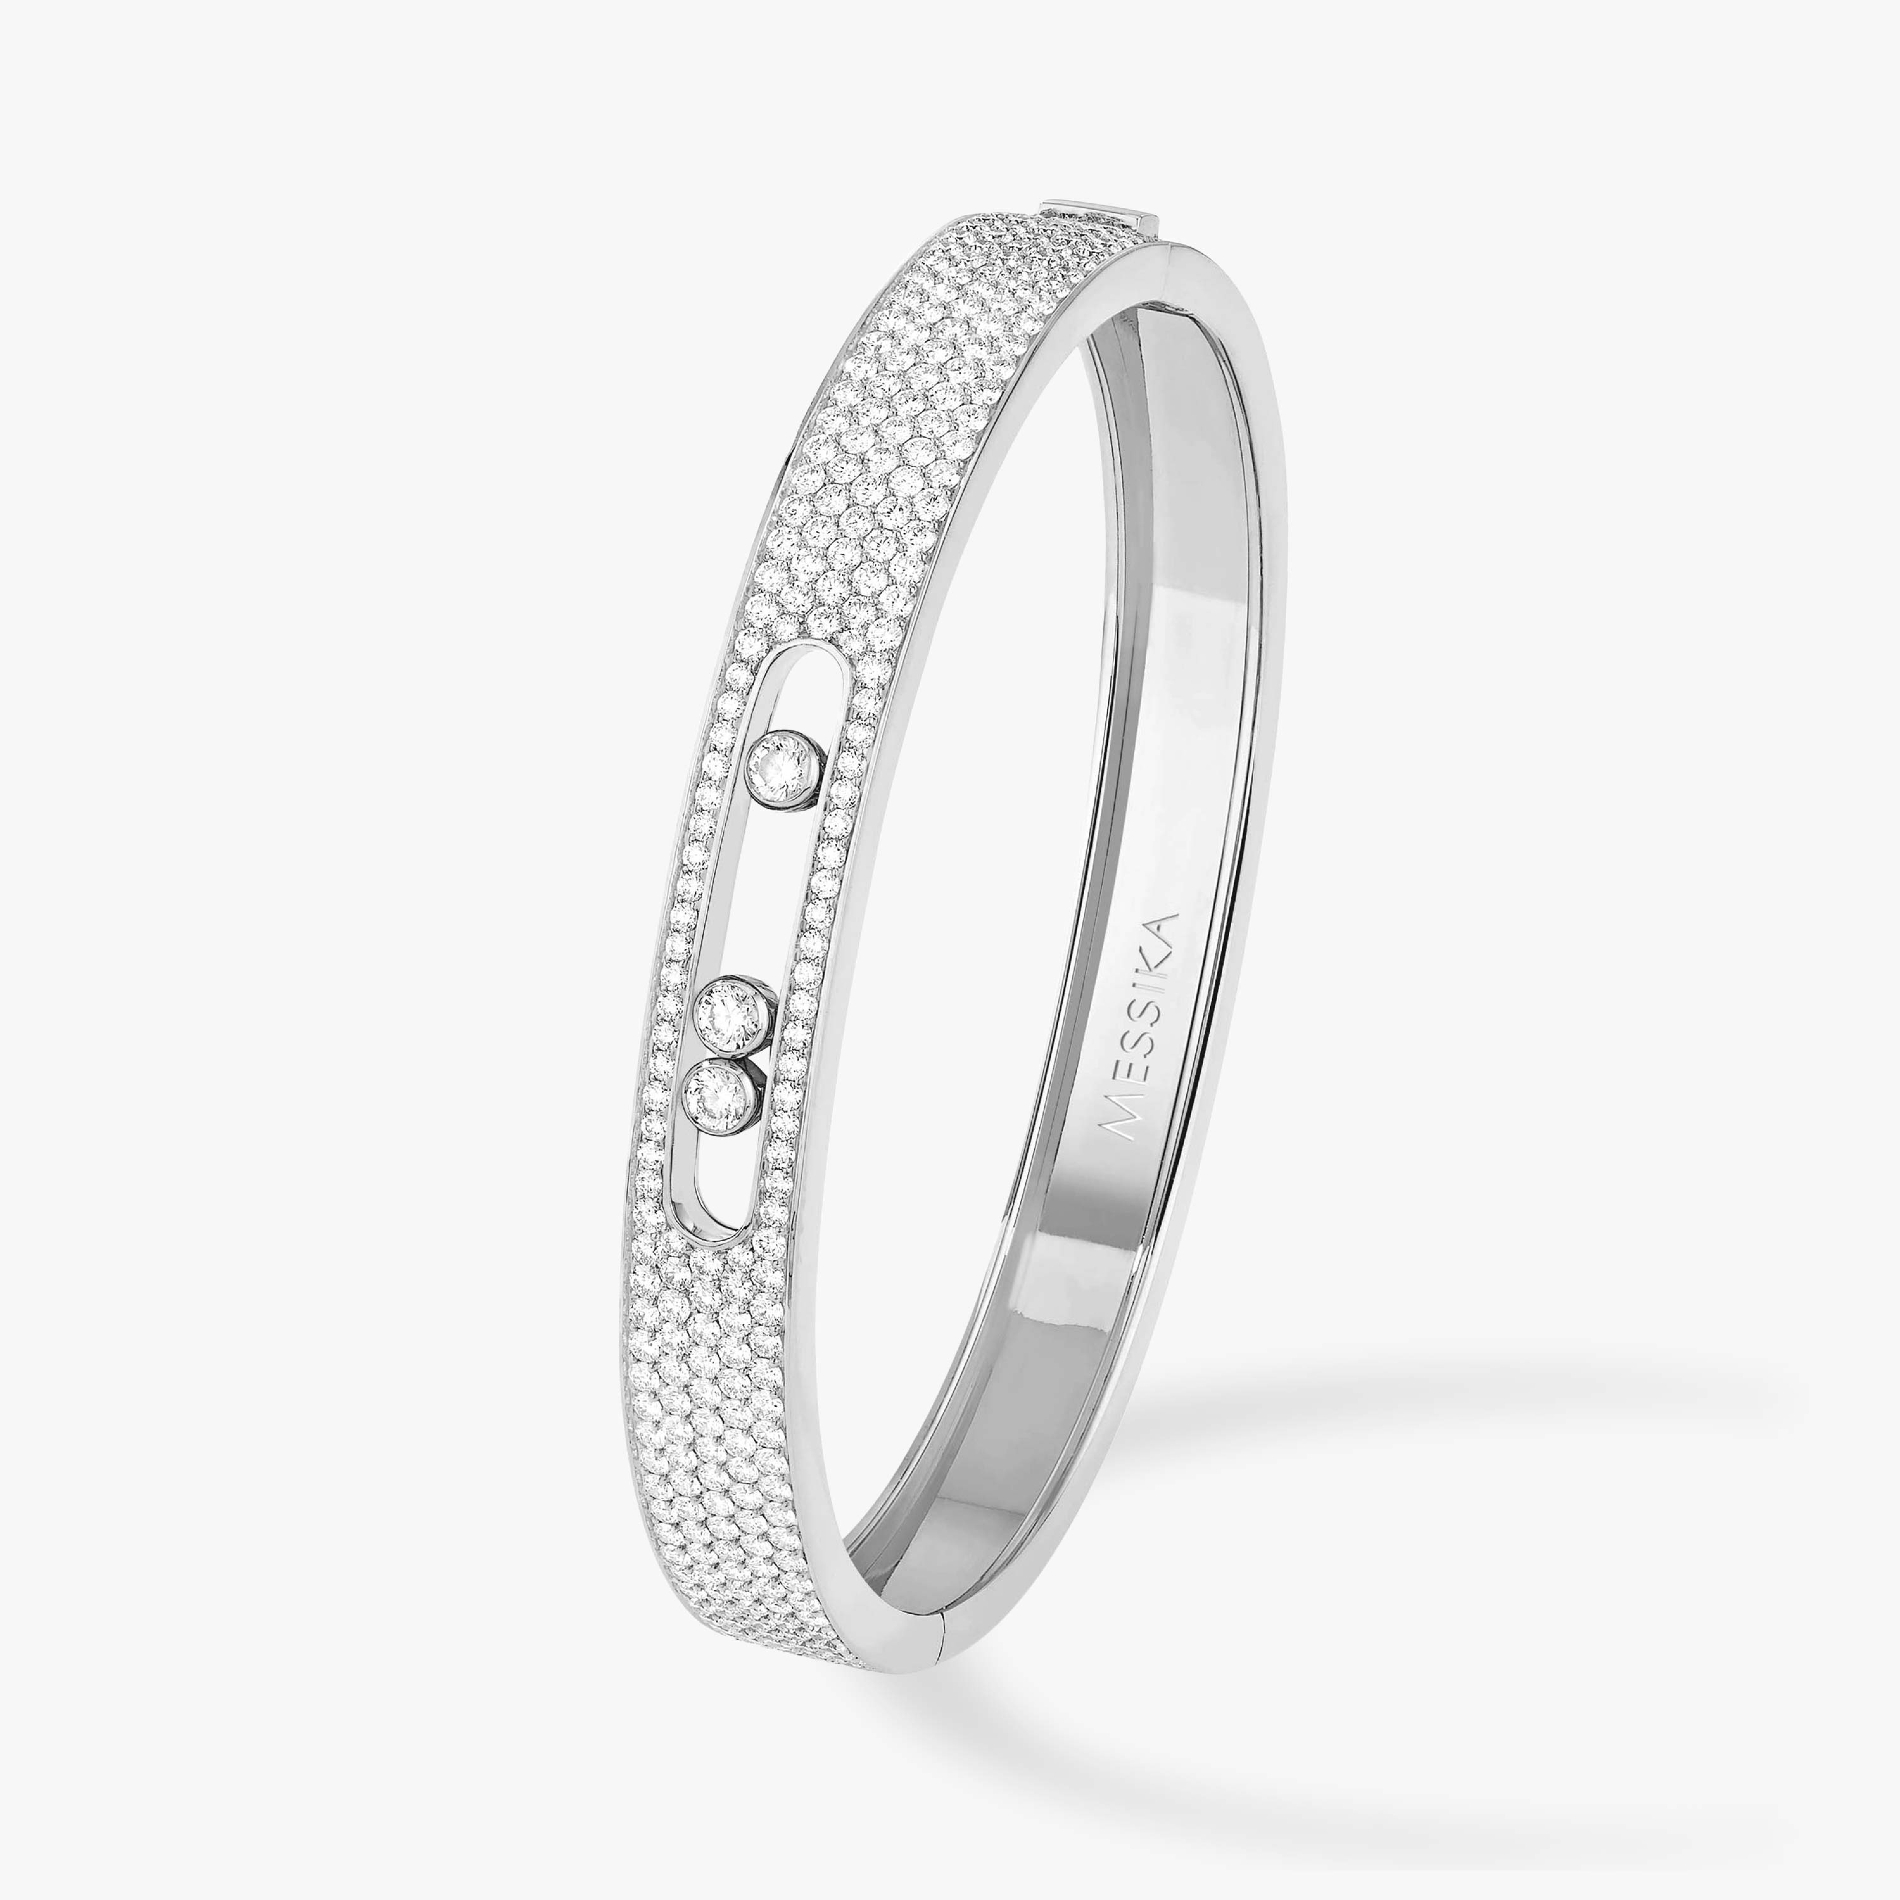 Move Joaillerie Pavé Bangle White Gold For Her Diamond Bracelet 04699-WG